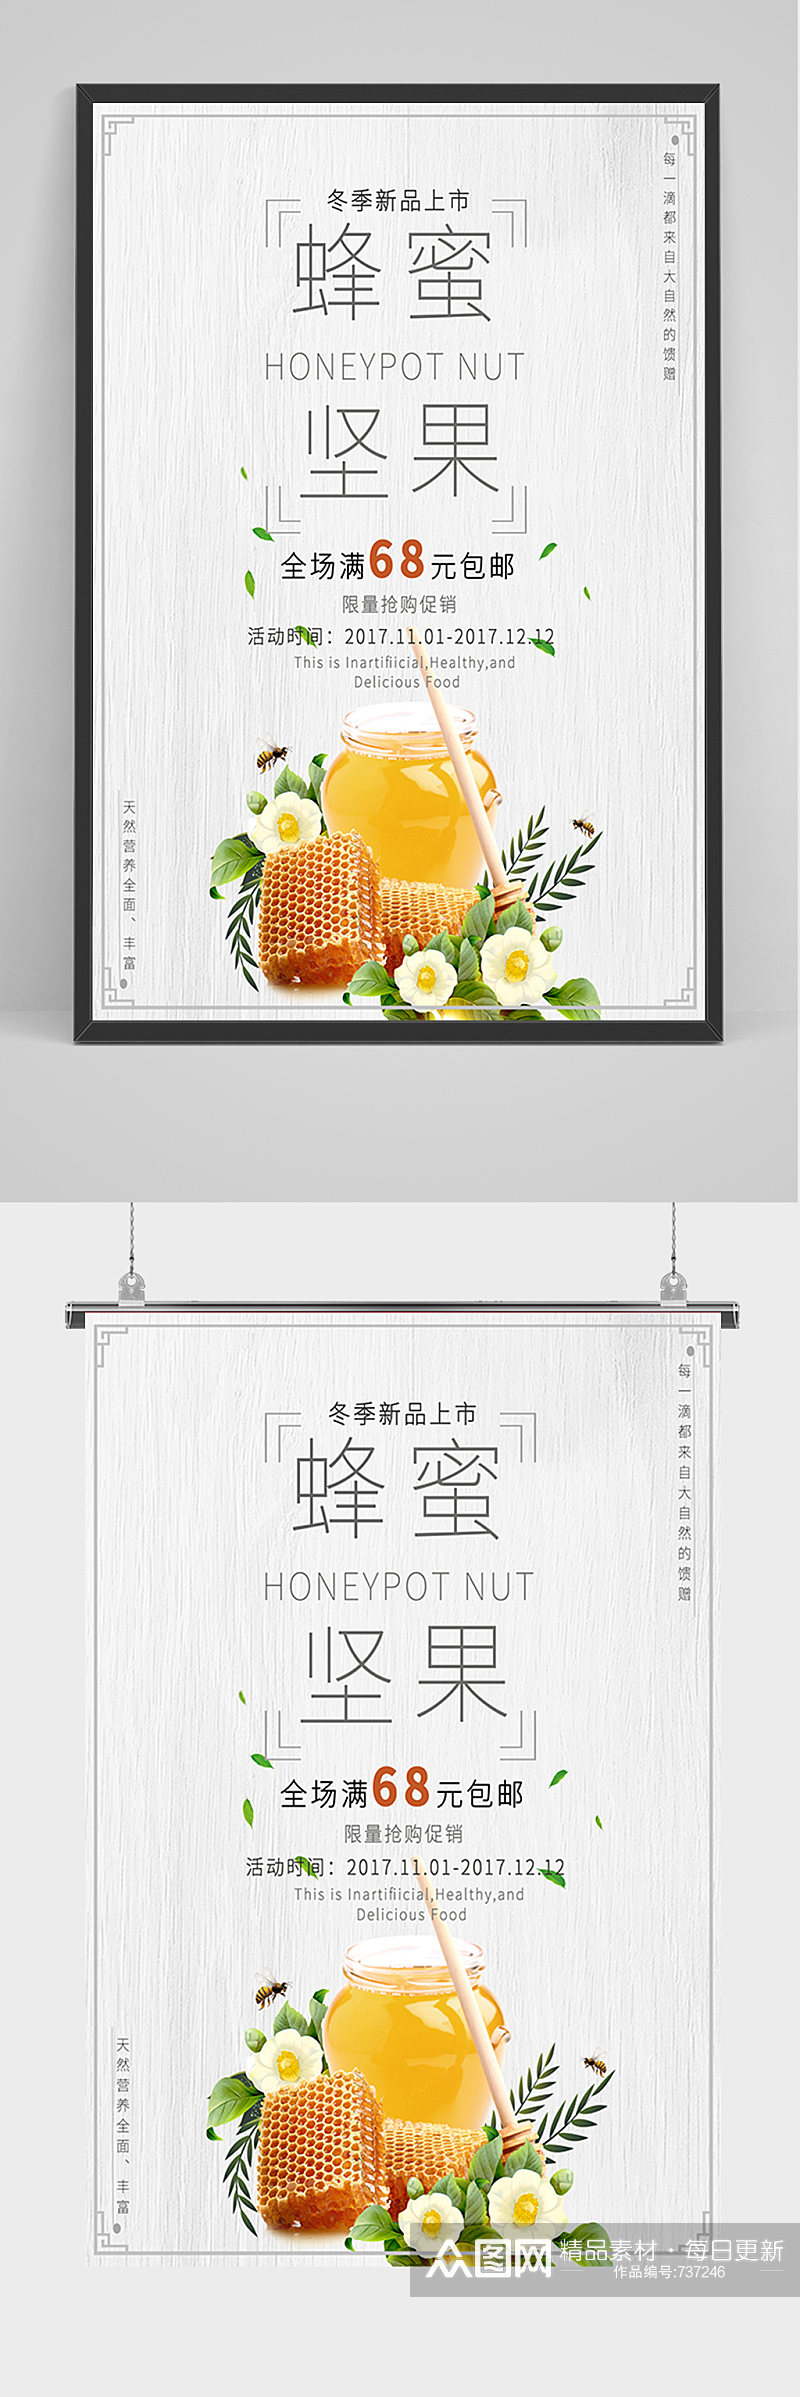 蜂蜜坚果冬季新品上市促销海报素材